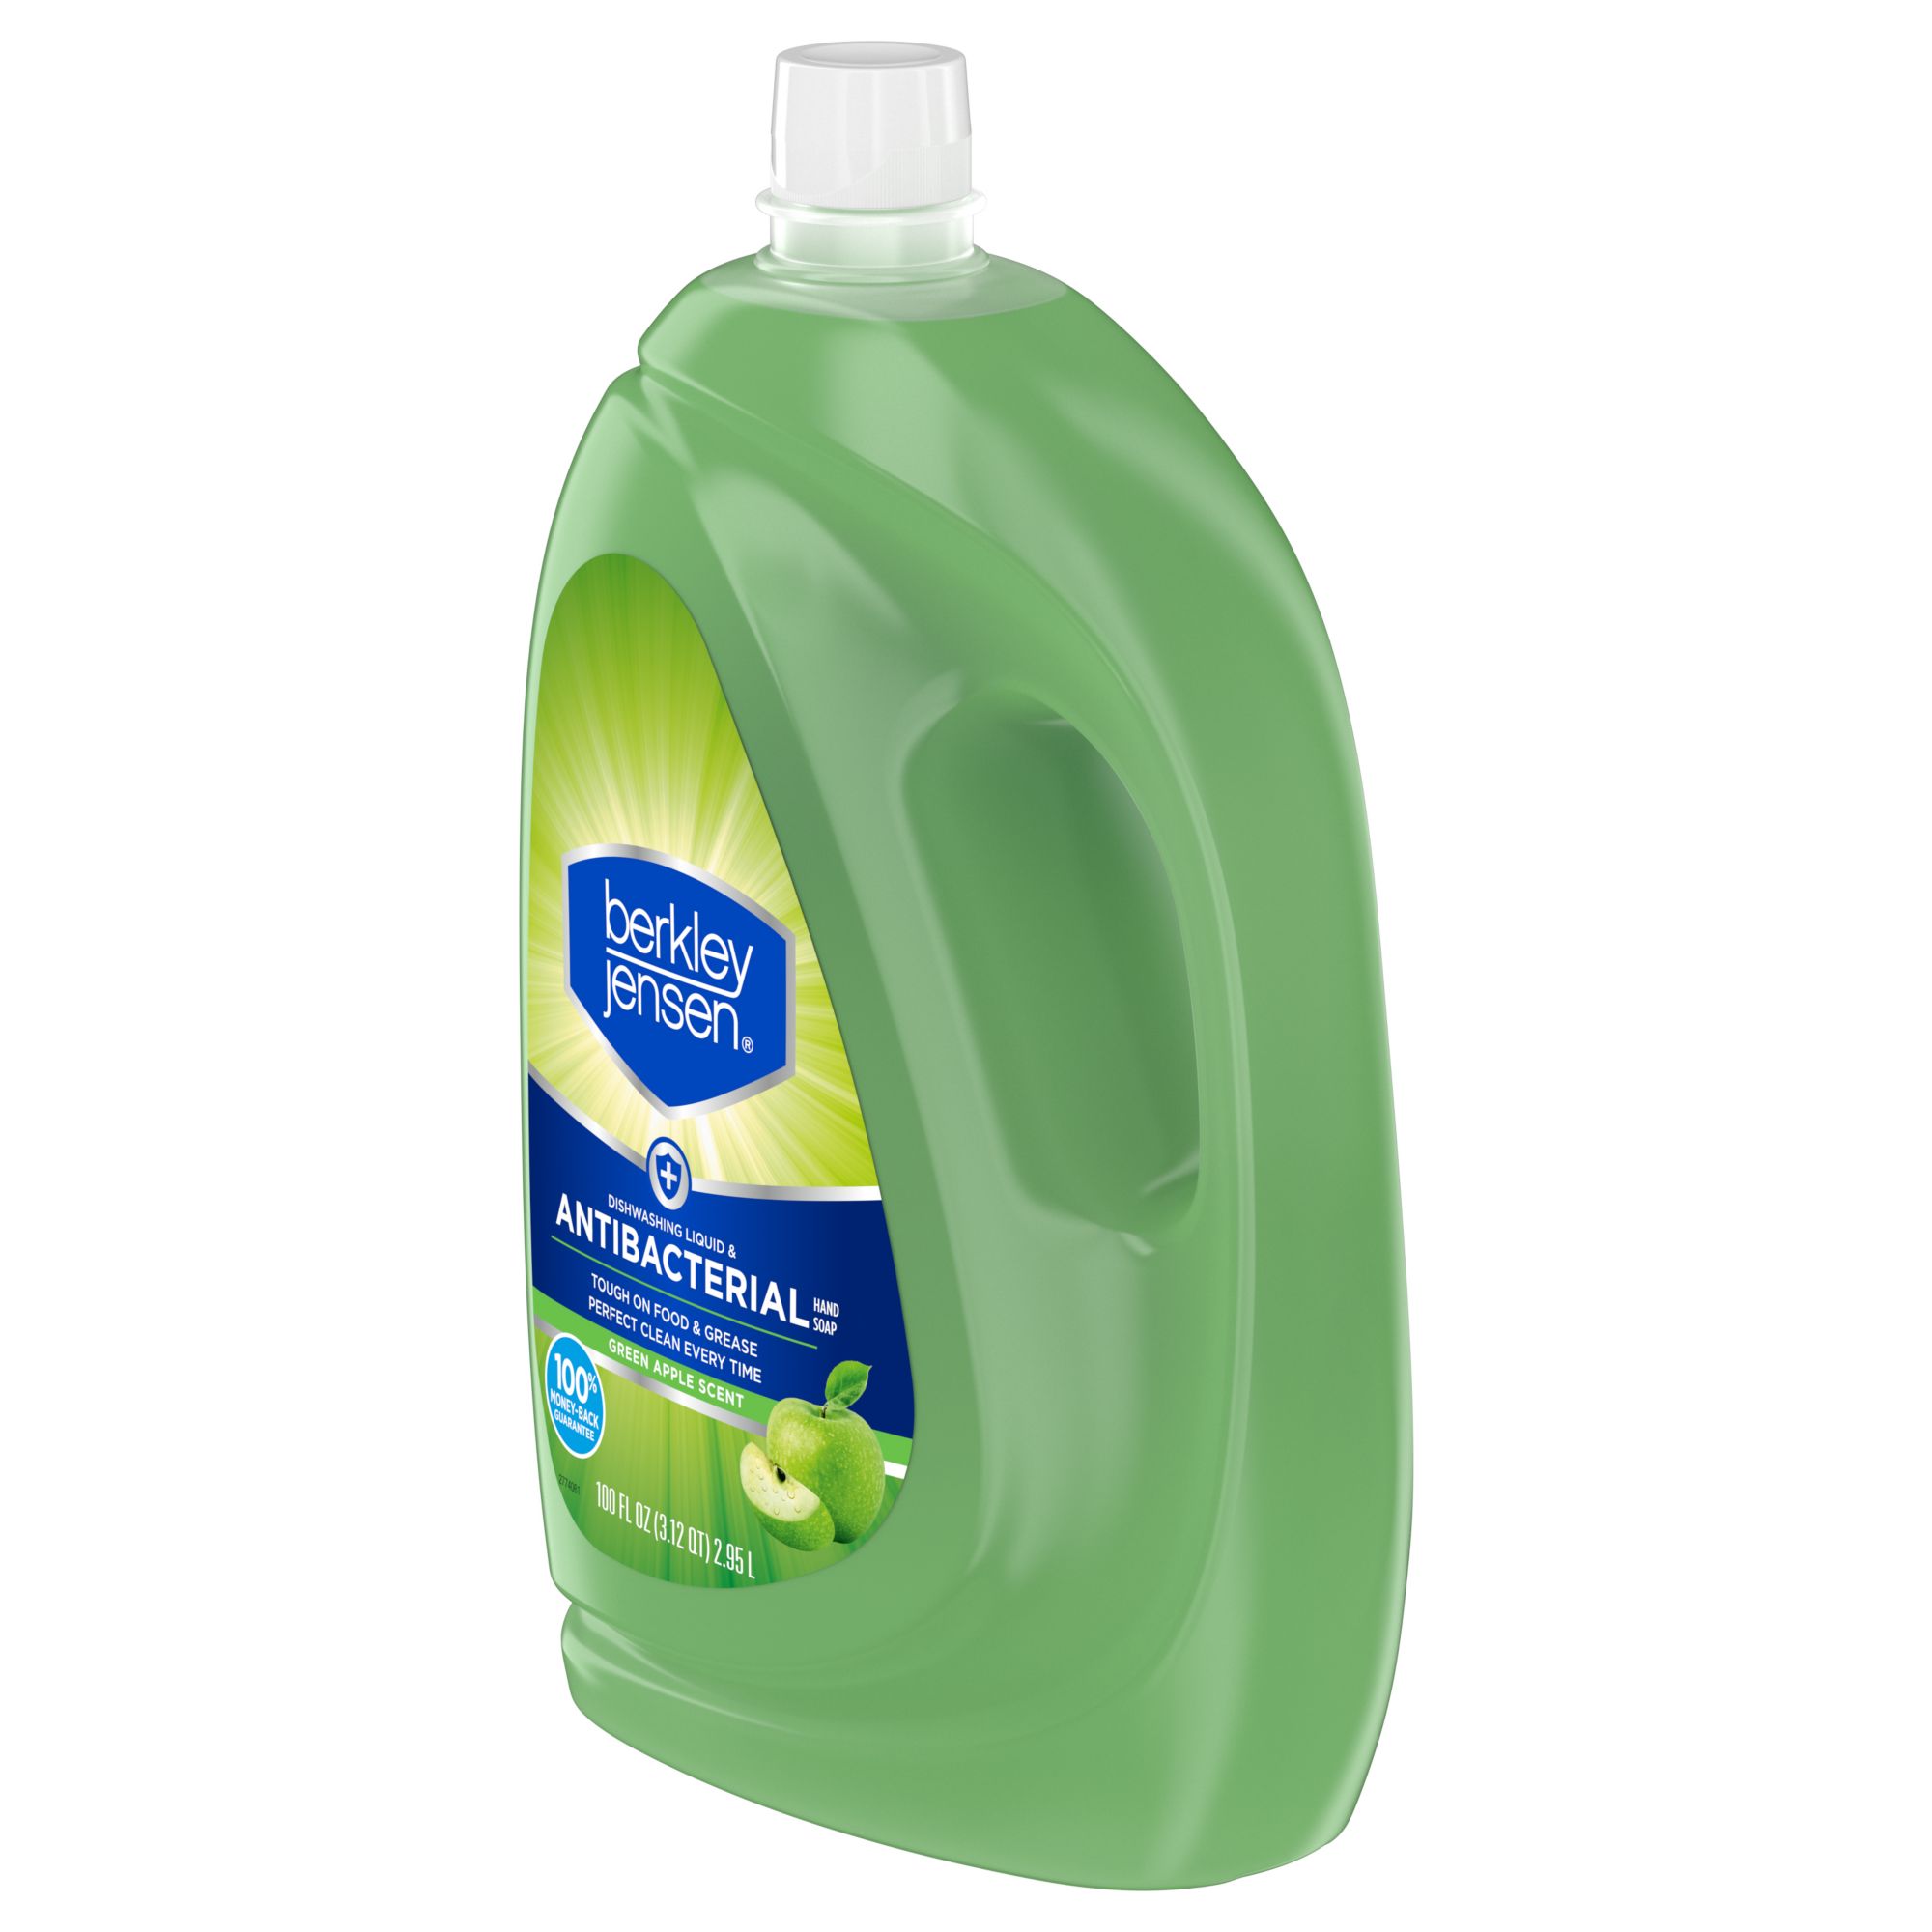 Berkley Jensen 4-in-1 Dishwasher Detergent Fresh Clean Scent Pacs, 92 ct.